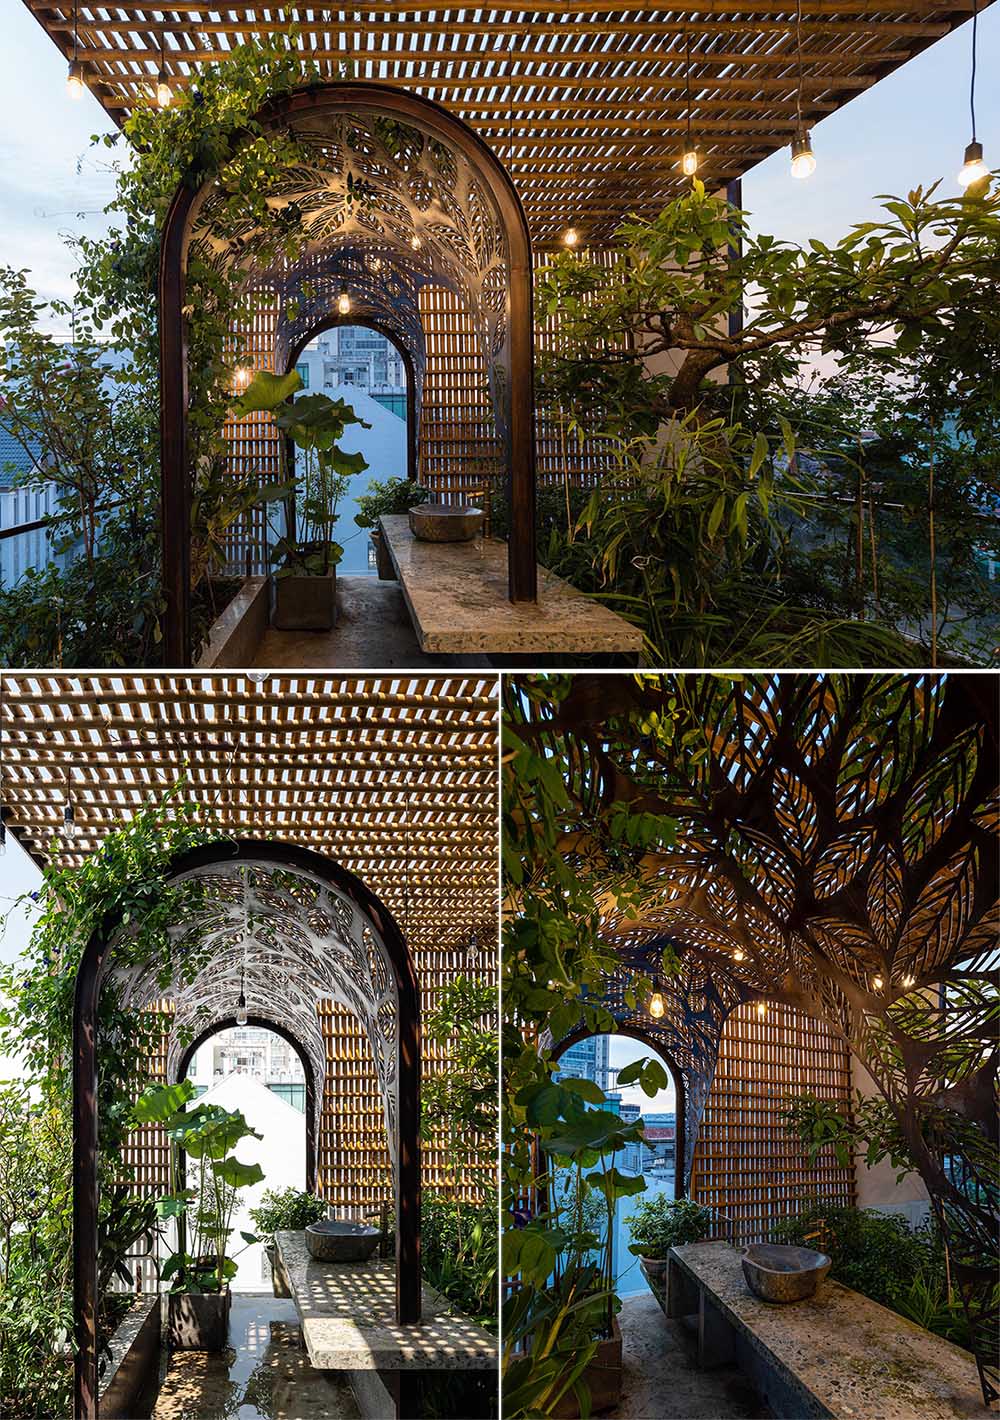 В верхней части современного дома есть открытая площадка с арочной беседкой с растениями, которые дополняют мотив листьев.